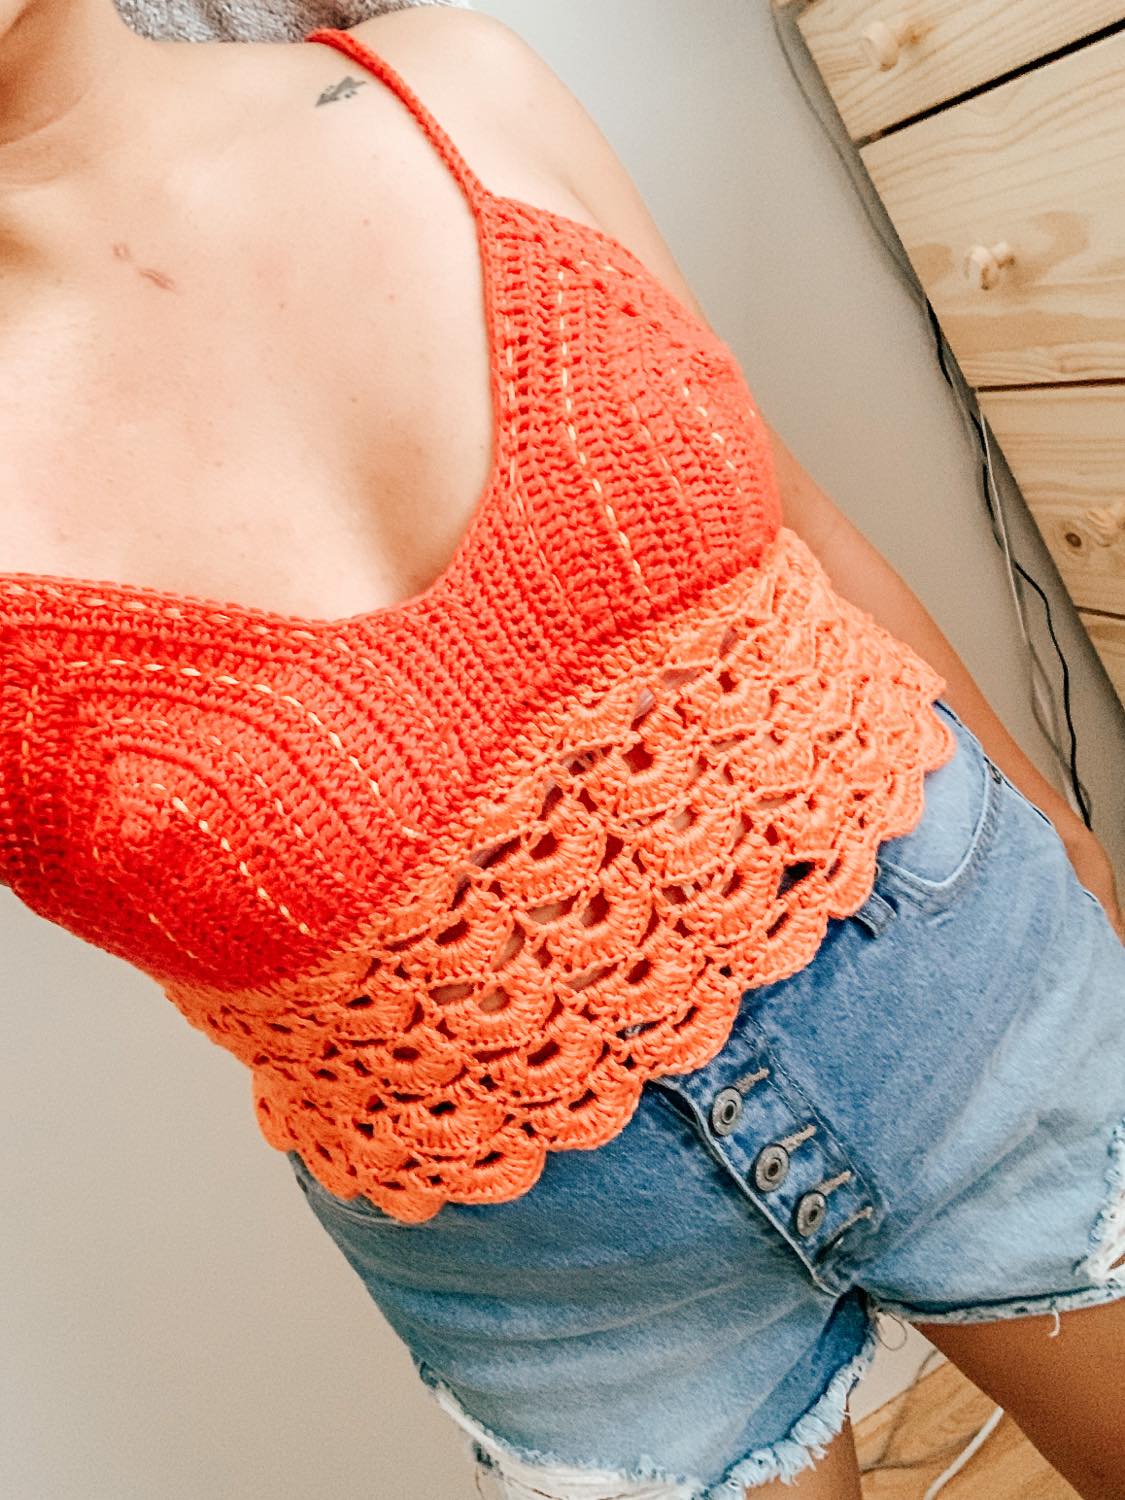 Crochet bralette PATTERN , crochet top pattern Bralette Top Pattern Crochet  Crop Top Crochet Lace Top Crochet Bikini Top Crochet Bra